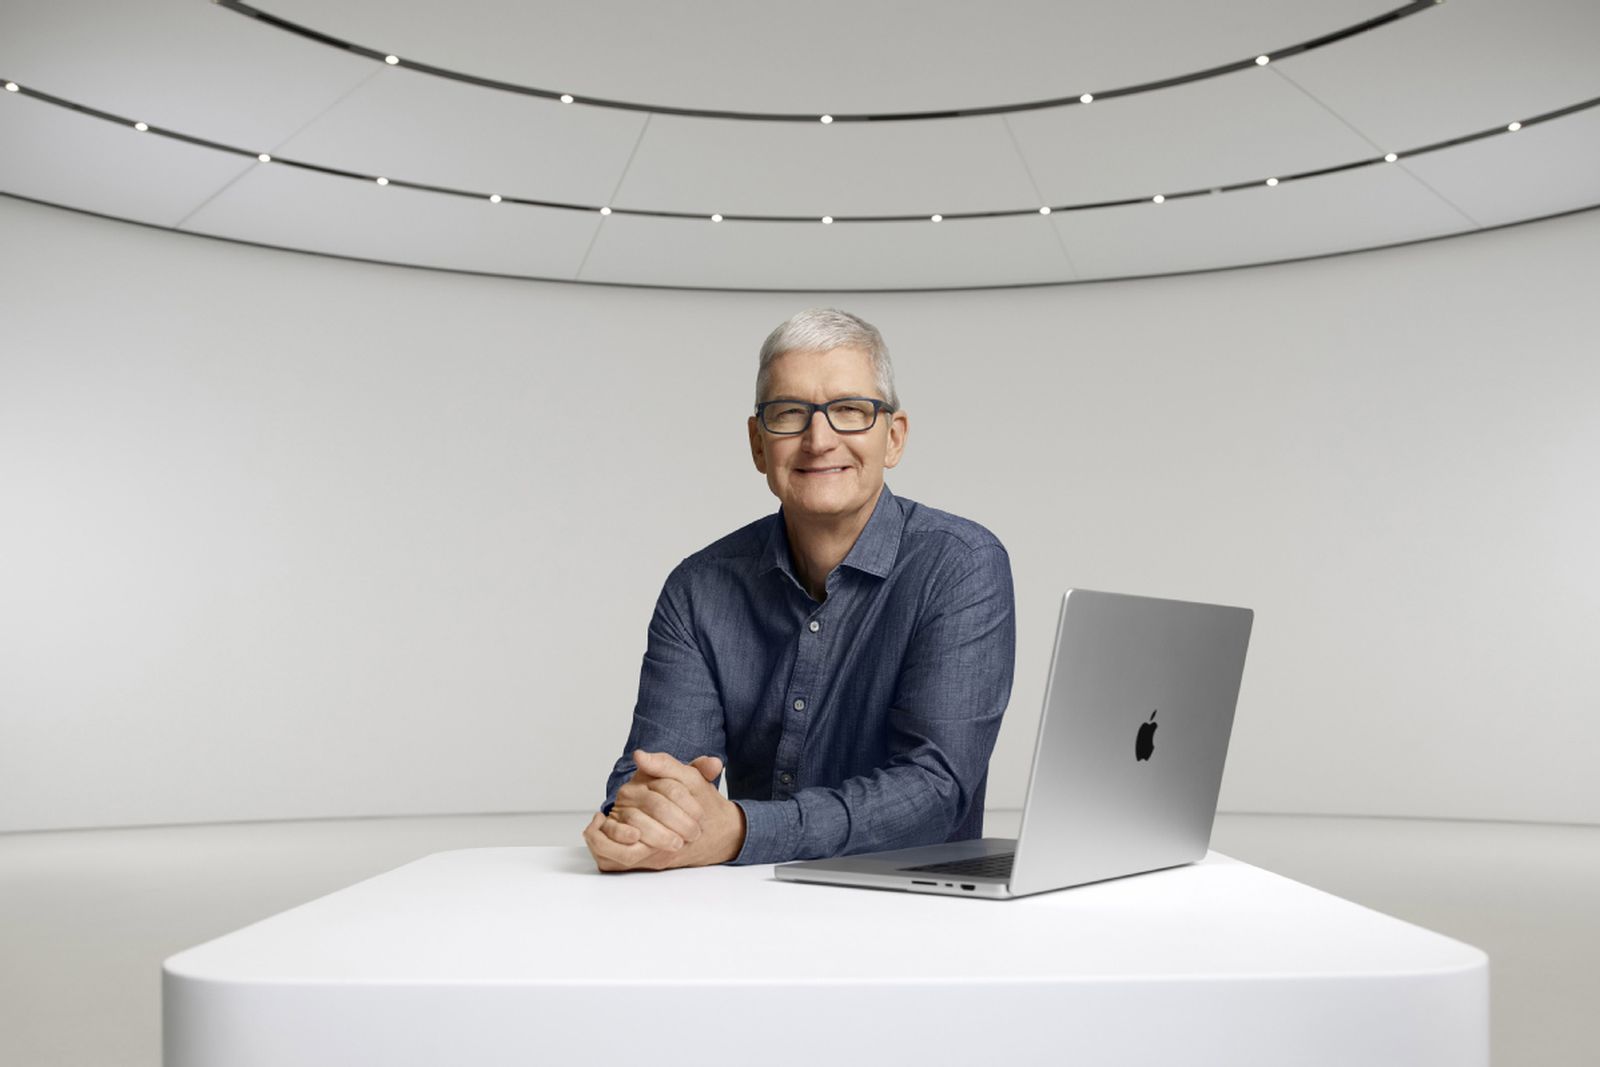 Tim Cook sediaci pri novom MacBooku Pro 16